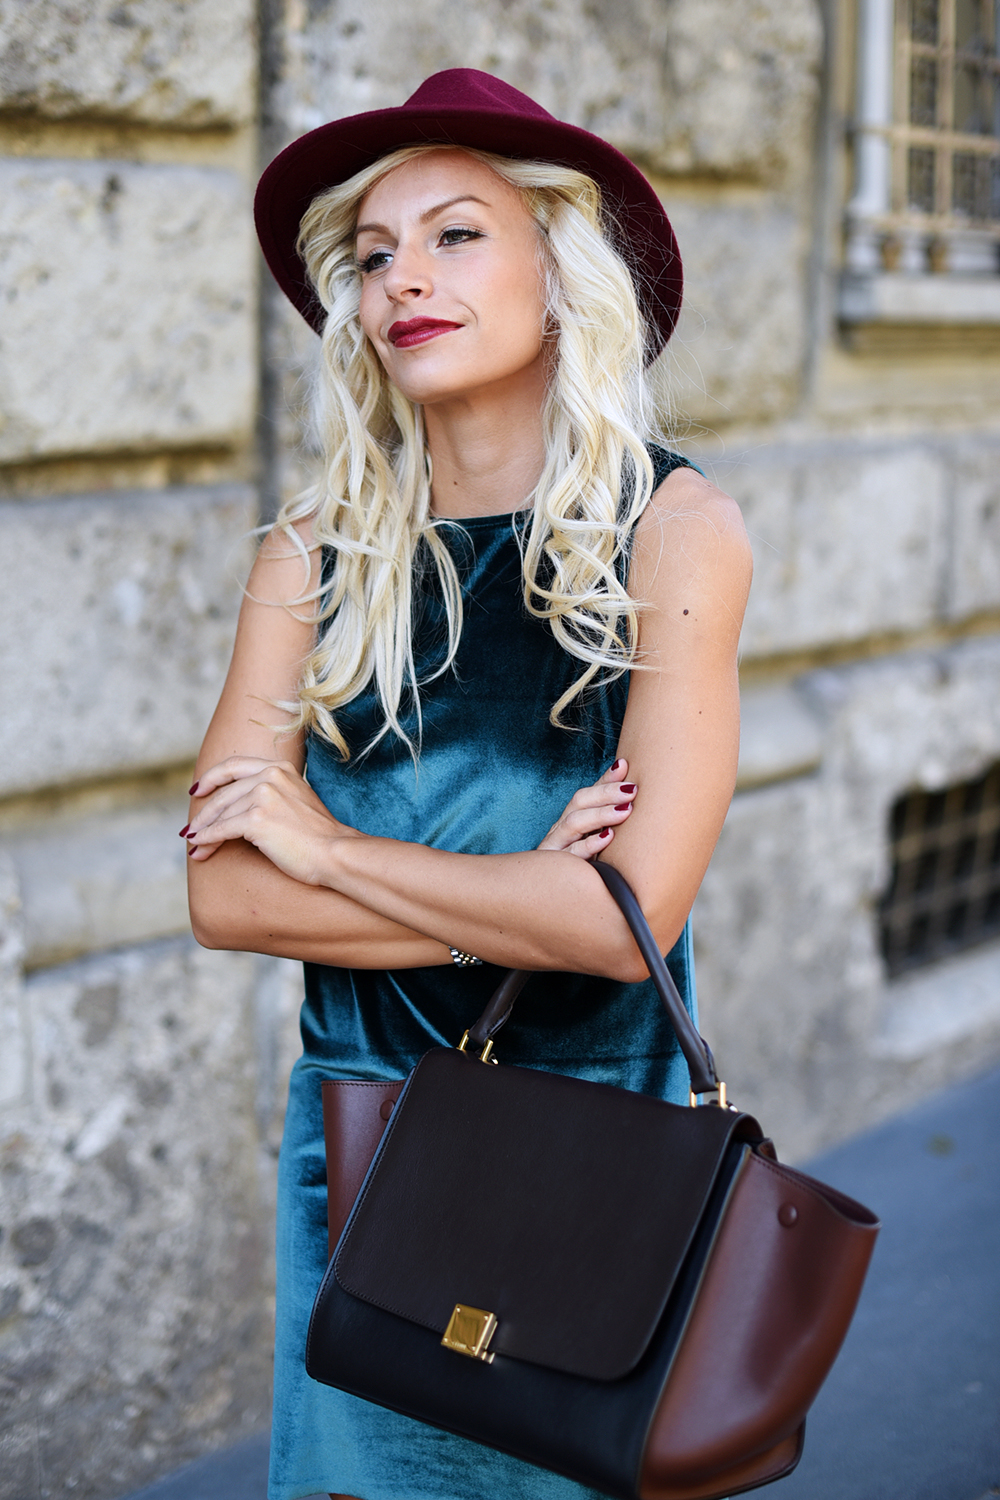 Rent Fashion bag, noleggio borse, affittare borse di lusso, rent luxury bags, soluzioni economiche occasioni speciali - fashion blog It-Girl by Eleonora Petrella